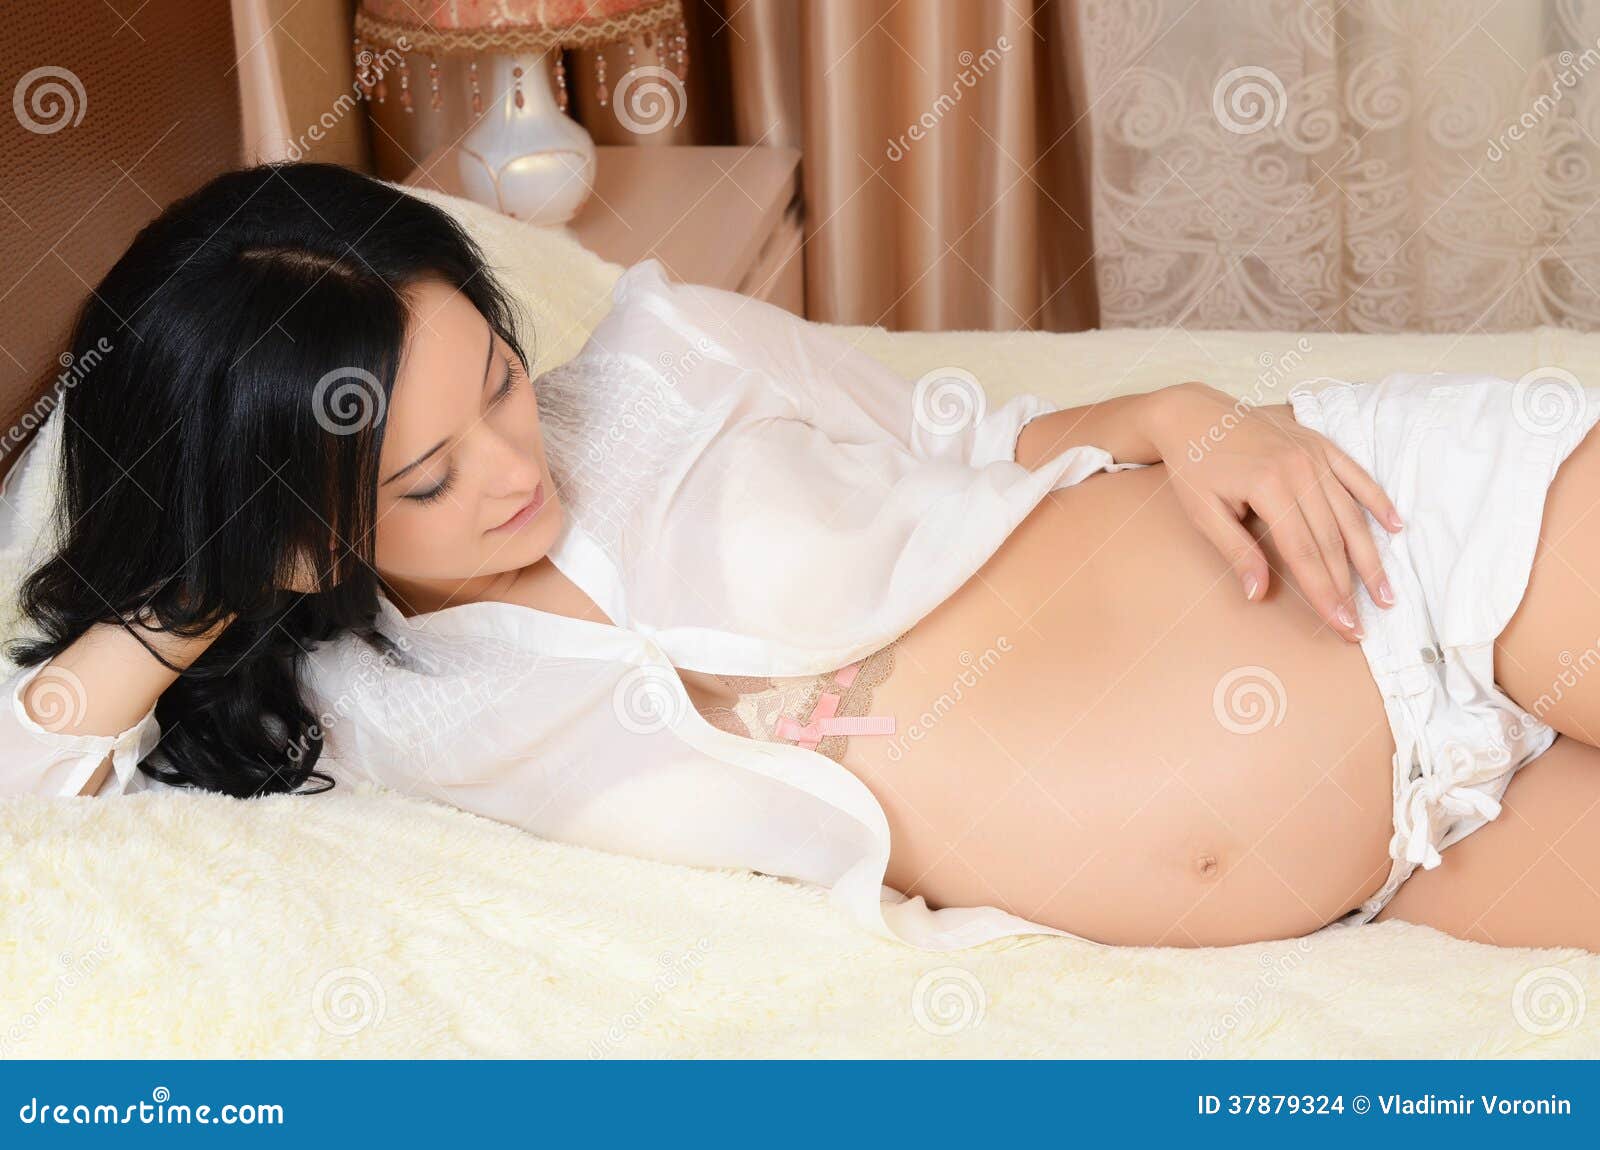 Фотосессии беременных на кровати (Сладкие мгновения в ожидании) - trendymode.ru